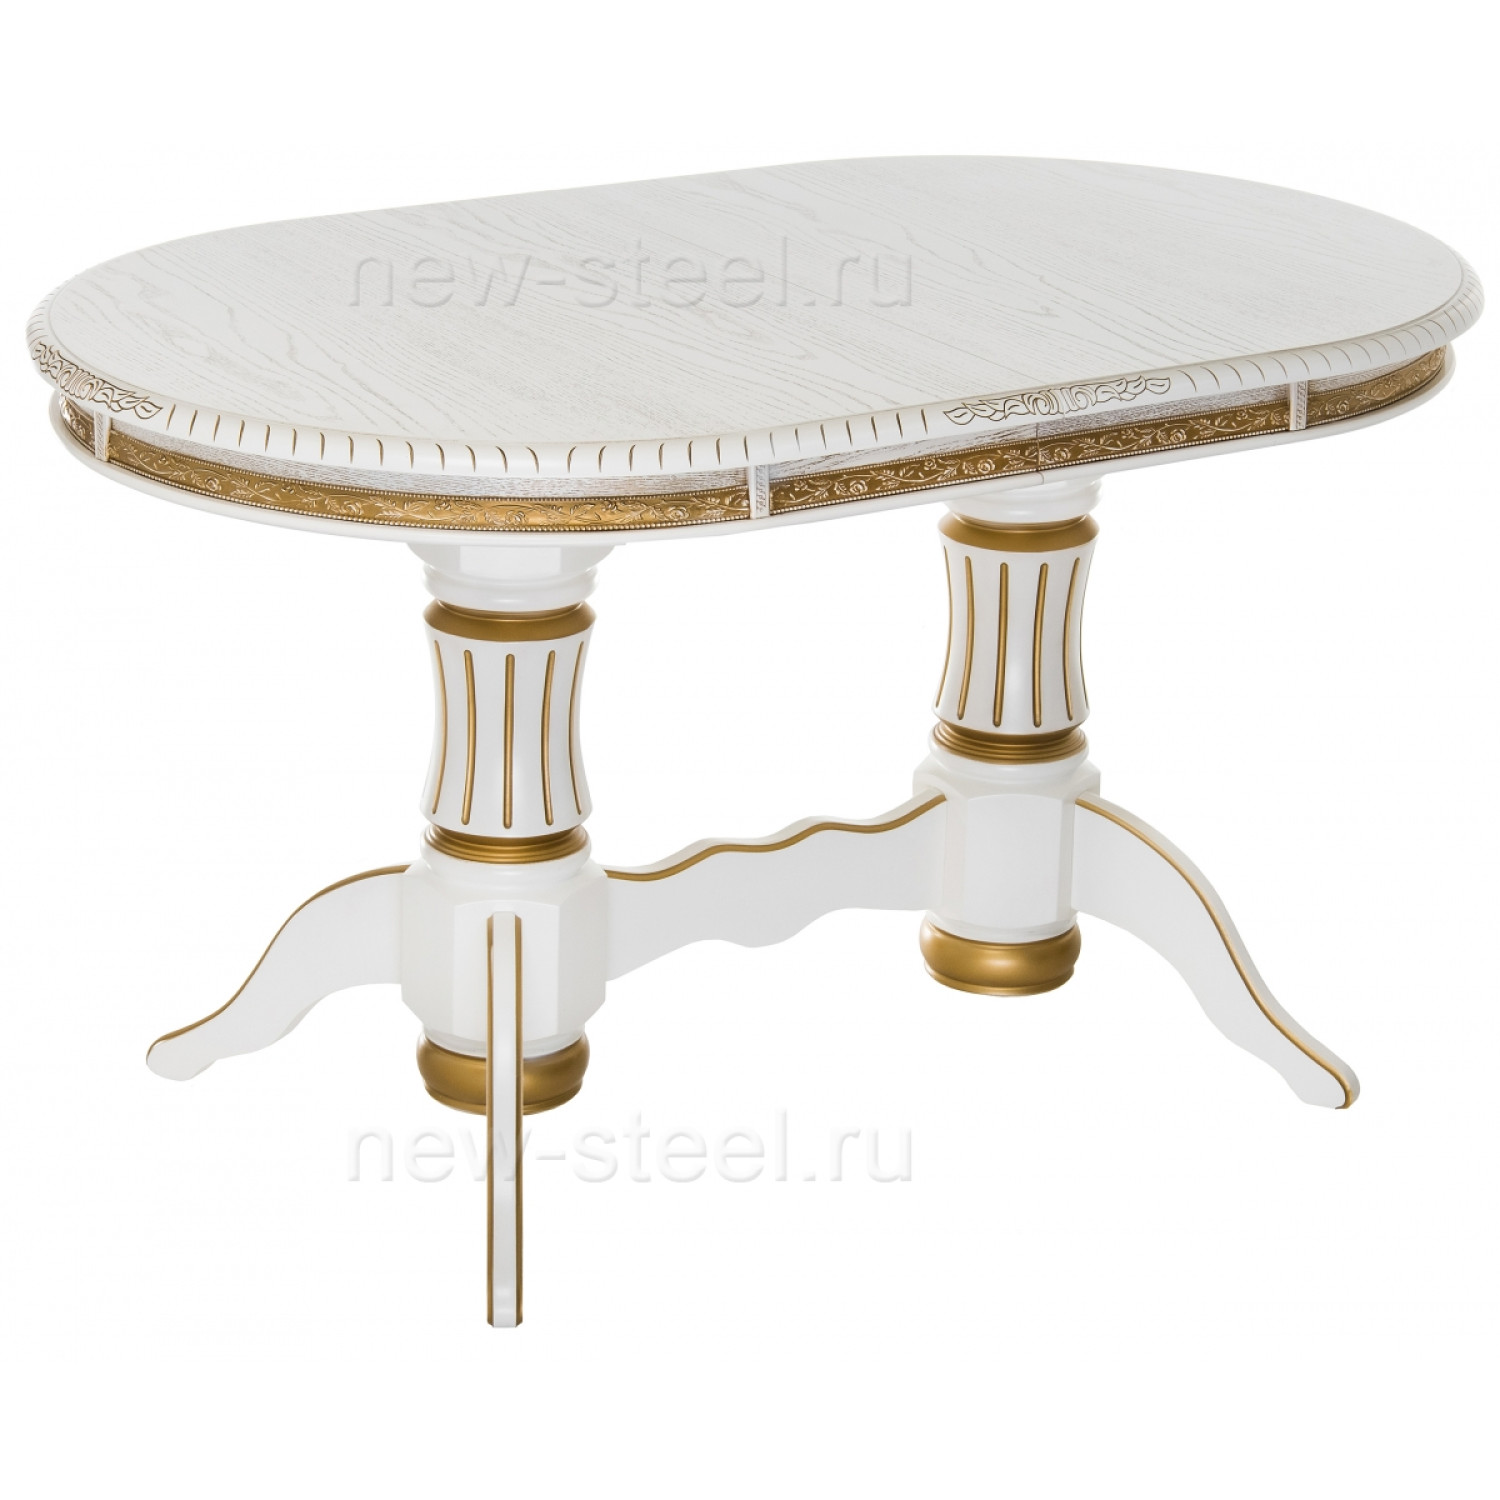 Обеденные Женева молочный с золотой патиной фото 1 — New Style of Furniture